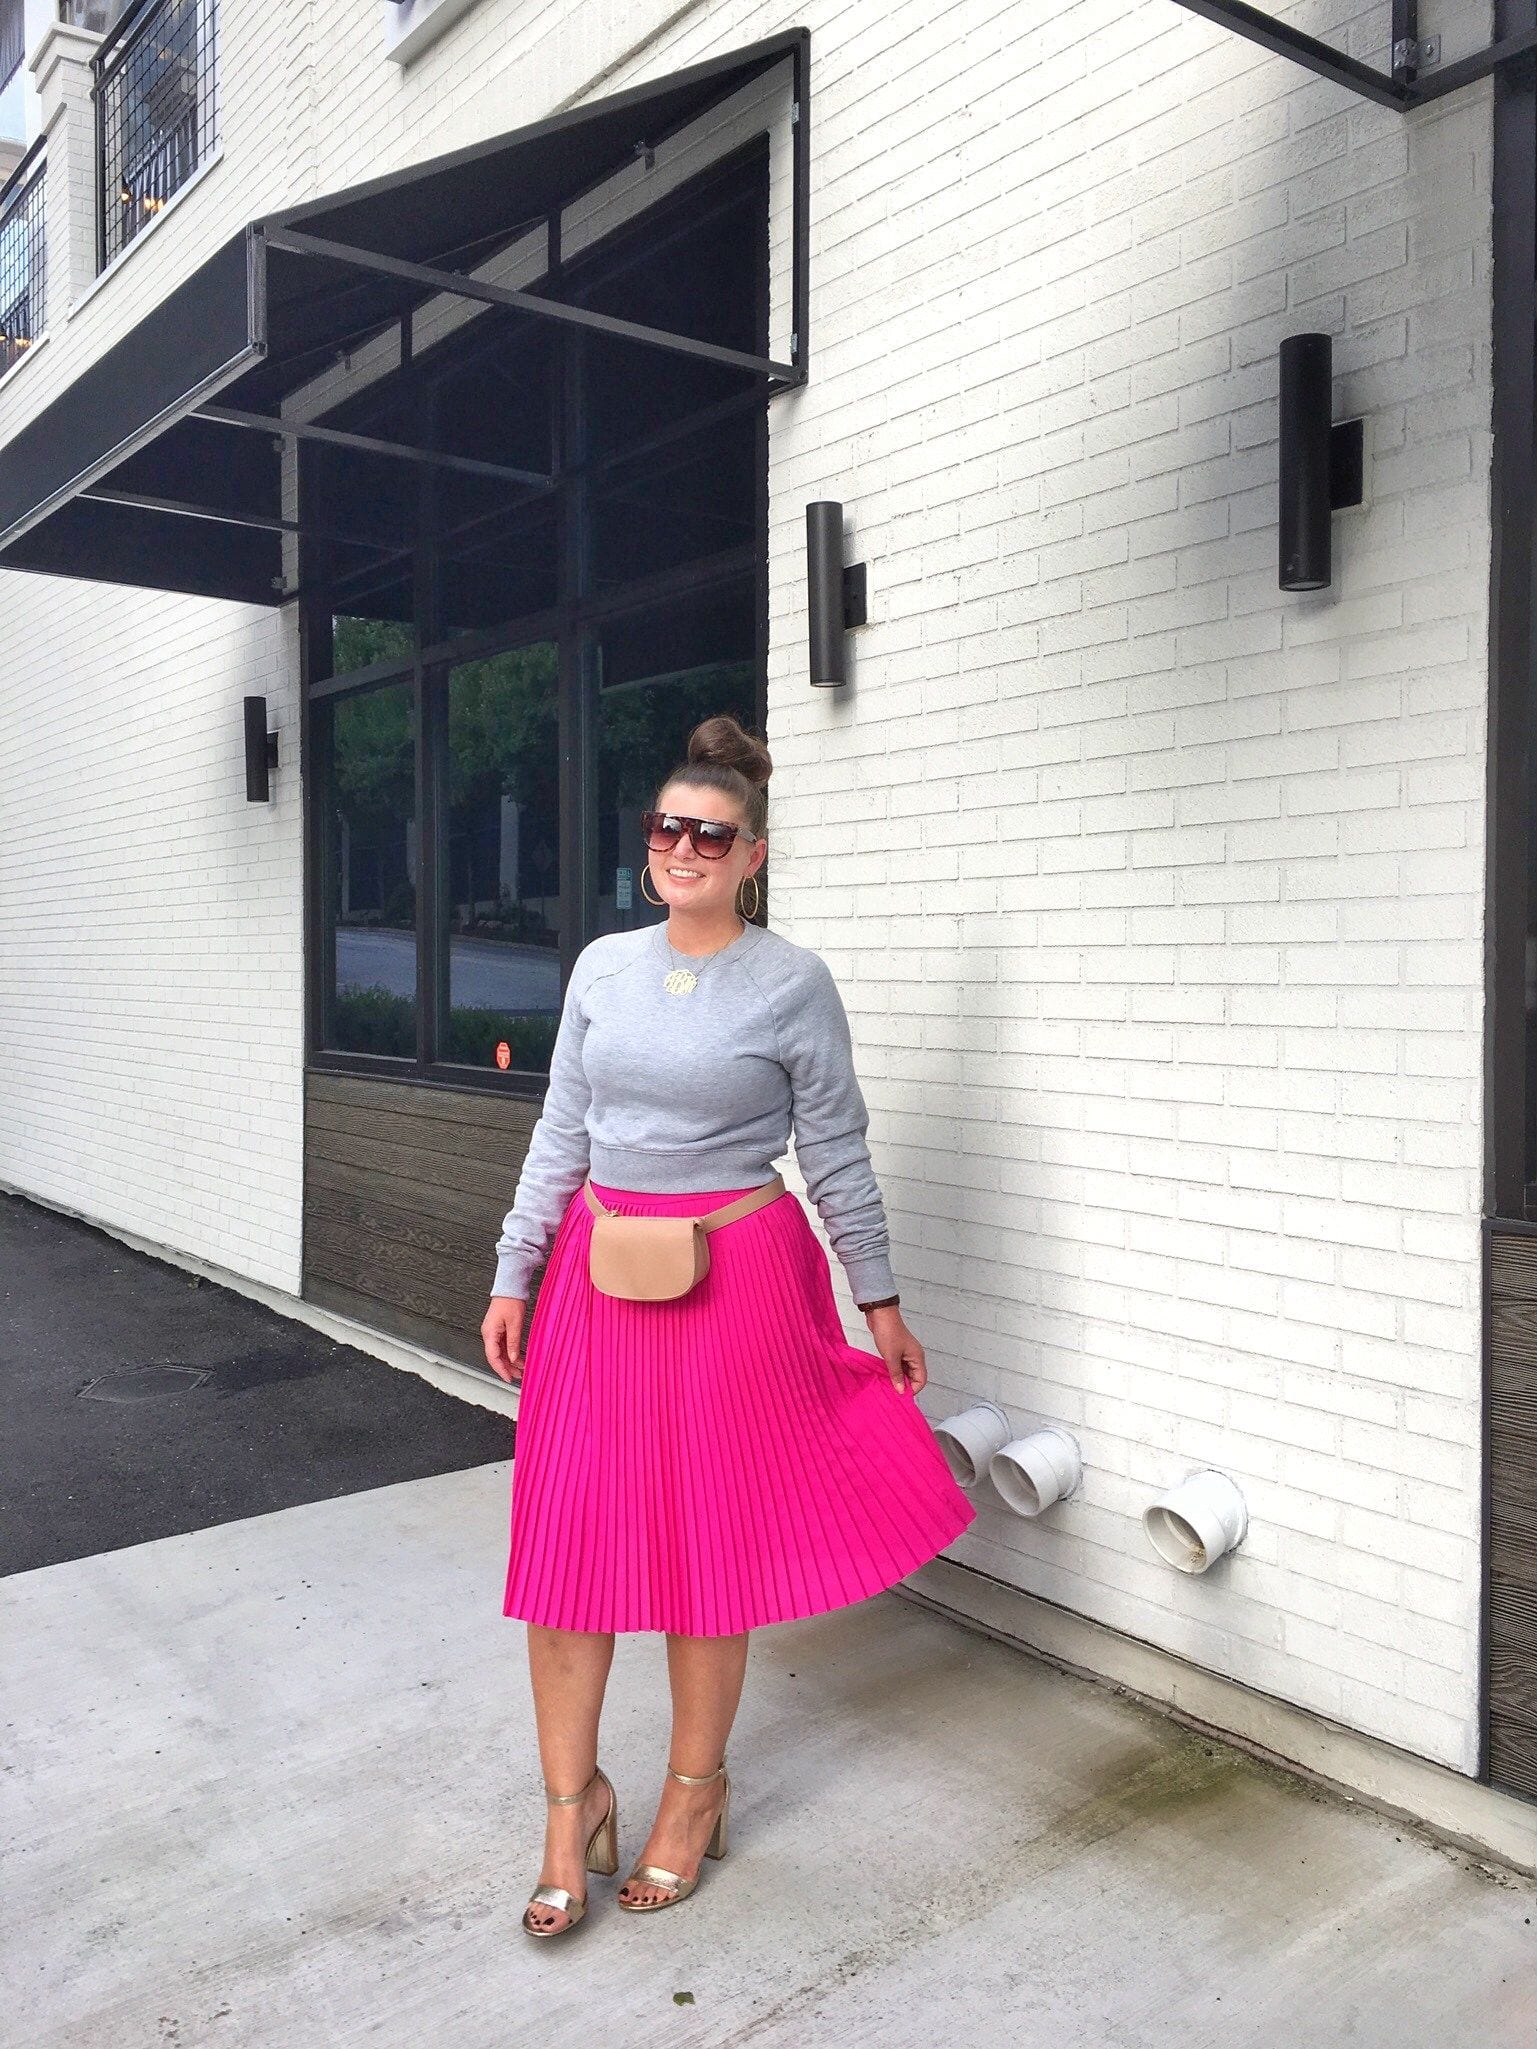 hot pibk skirt outfit ideas